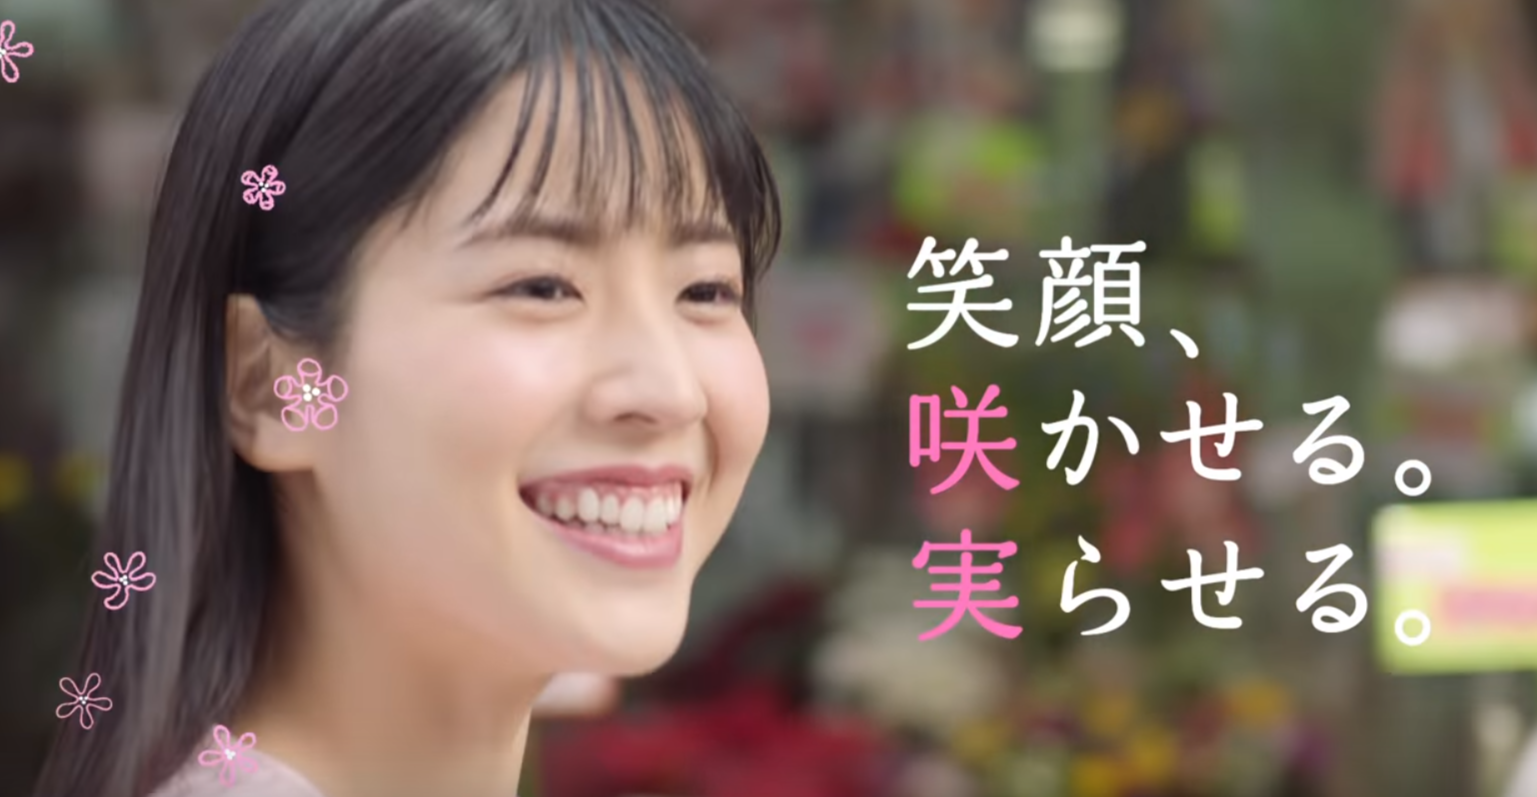 信用金庫 19 Cm女優の咲坂実杏について調査 Wiki情報をリサーチ 日々の出来事に一隅を照らす